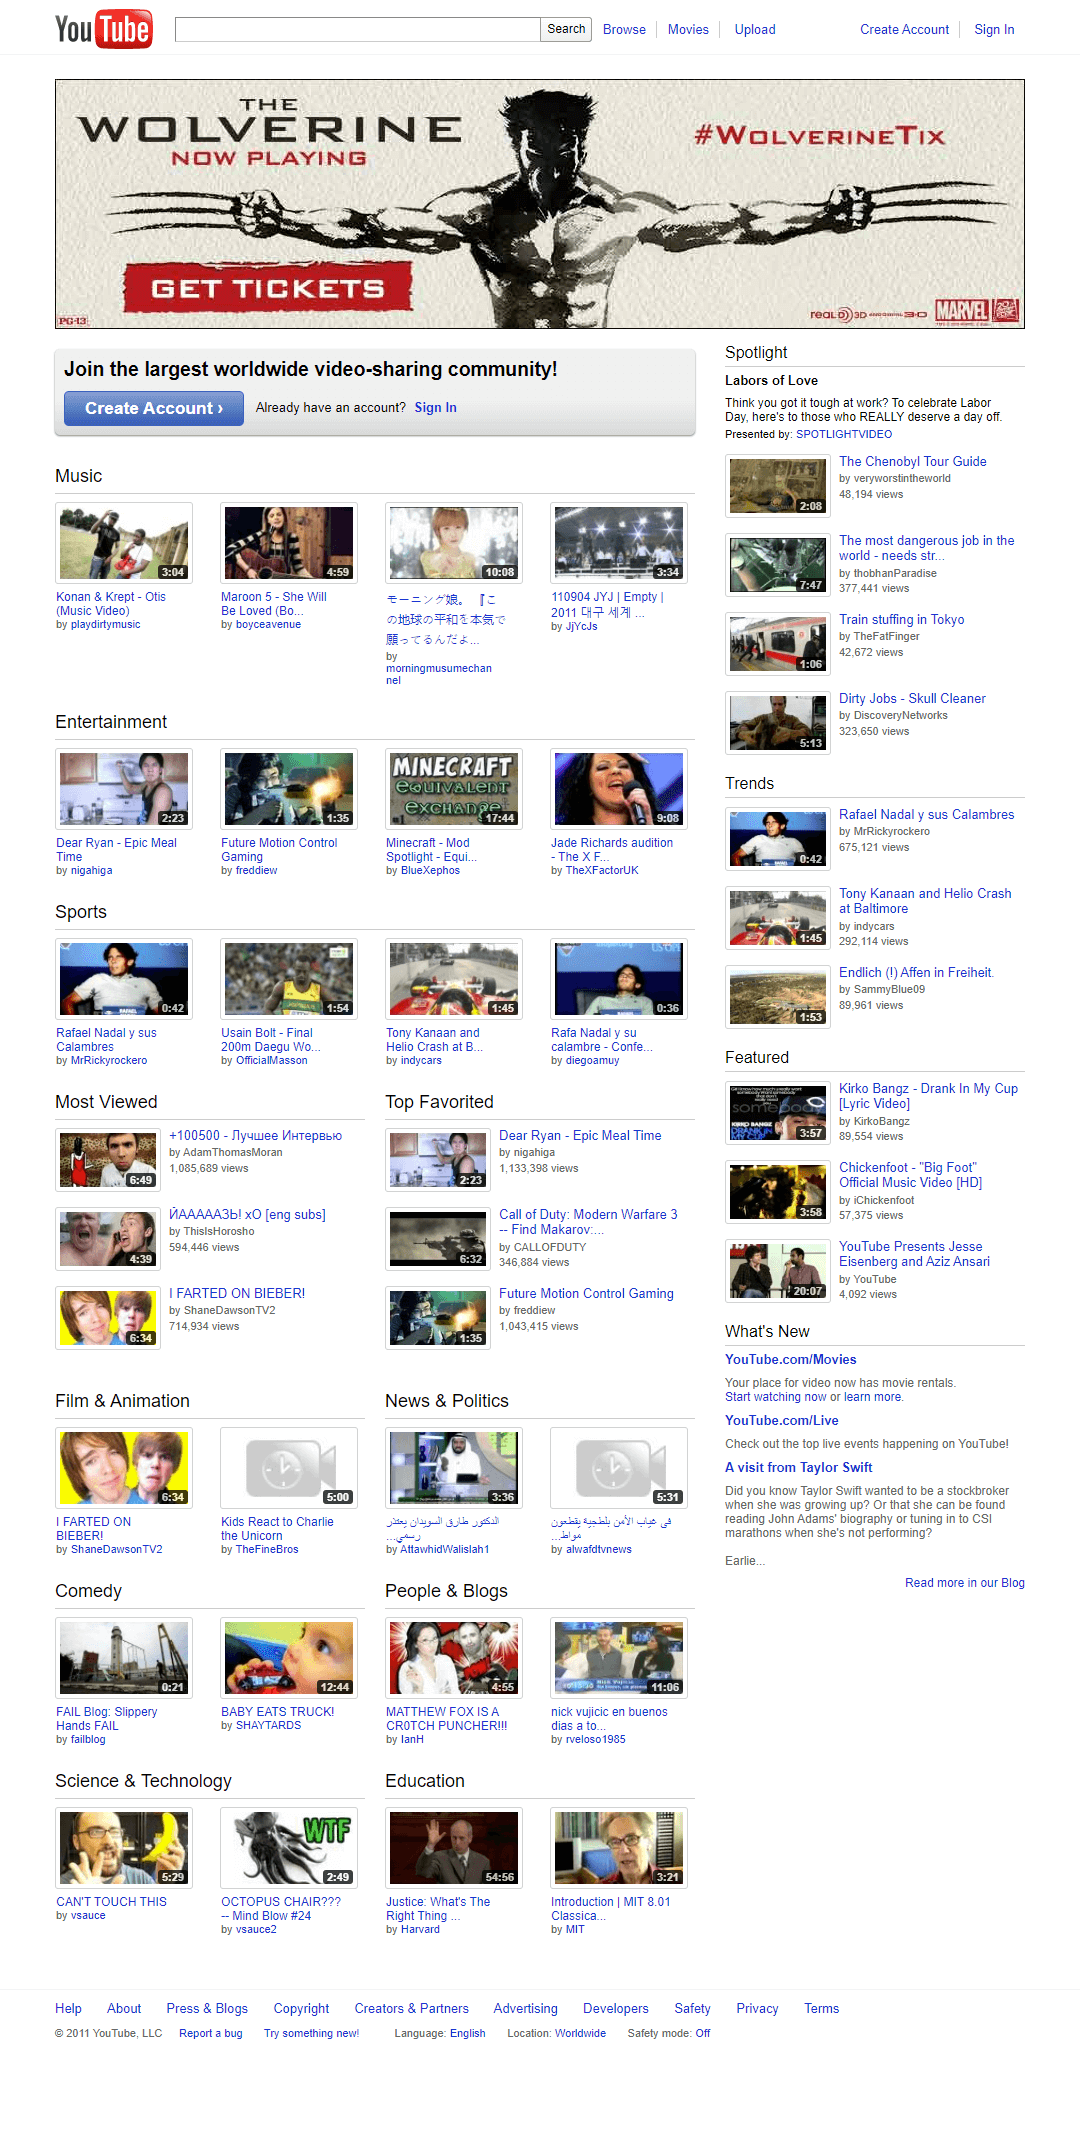 YouTube in 2011